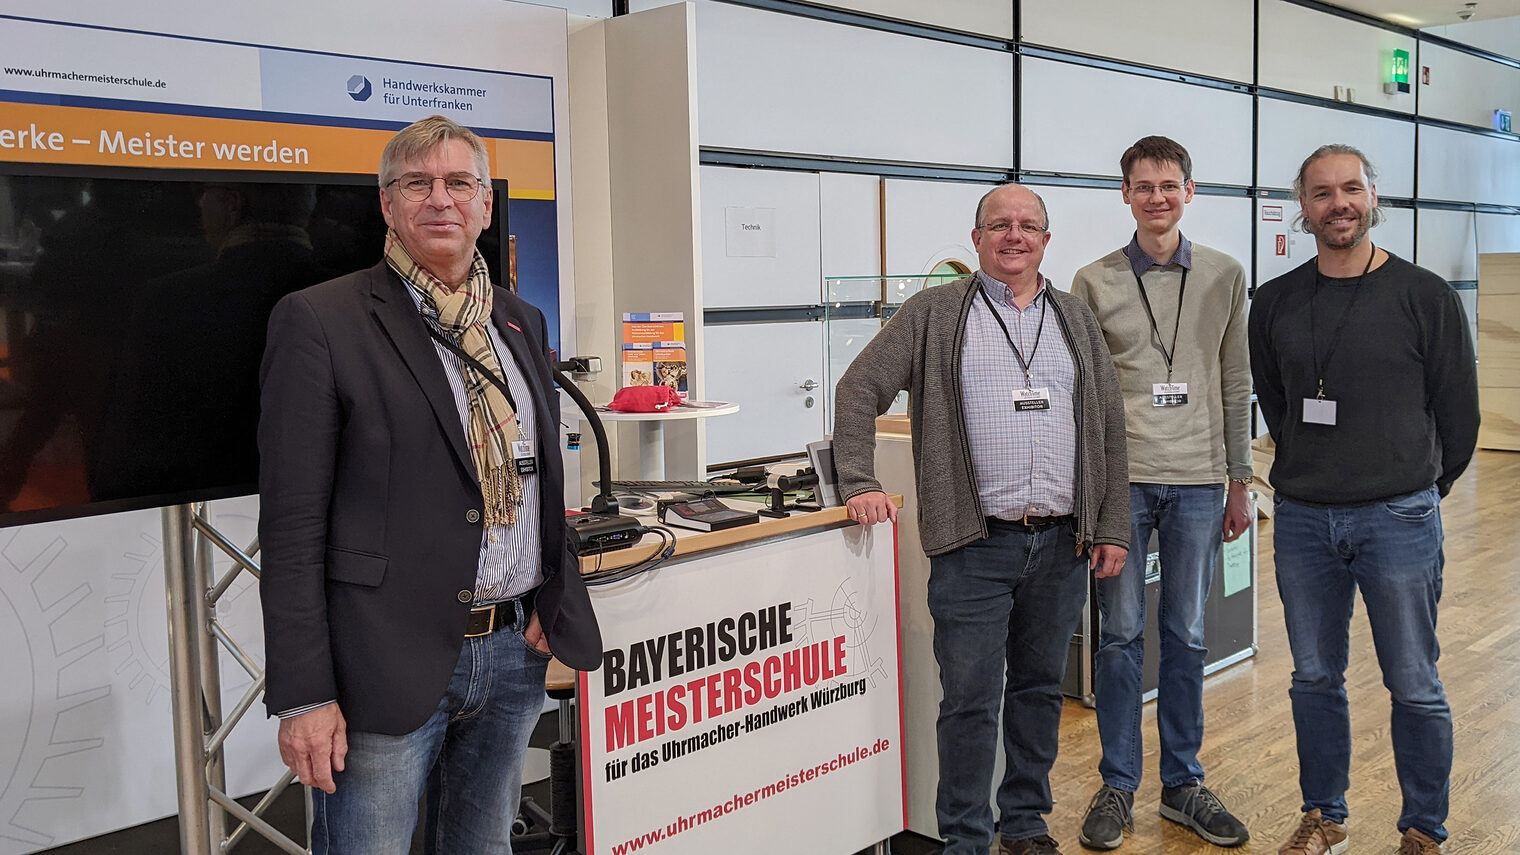 Stand der Bayerischen Uhrmachermeisterschule mit Präsident Michael Bissert, Michael Eberlein, Johannes Imhof, Tobias Selzam